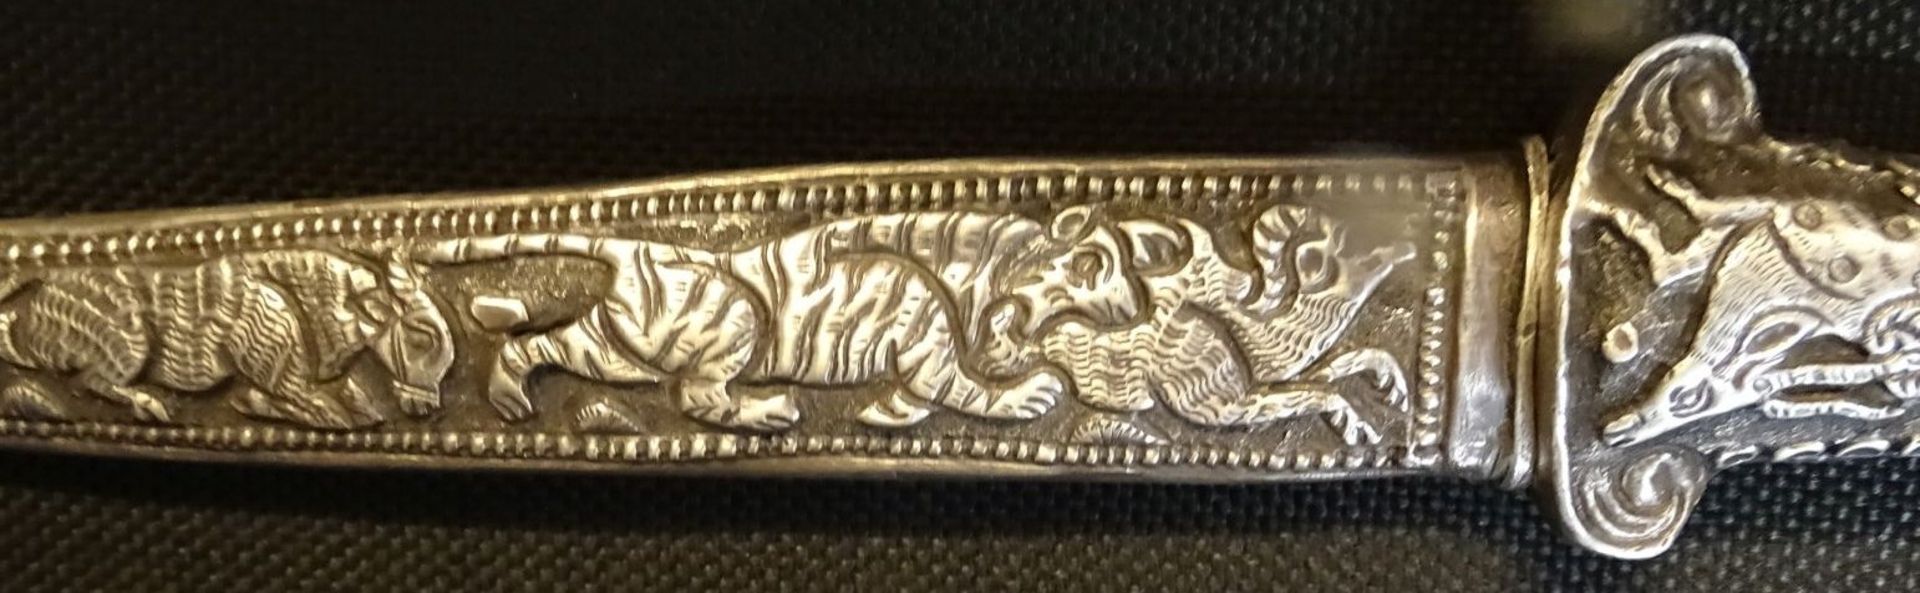 silberner orientalischer Schmuckdolch, gefüllter Silbergriff mit Widderkopf, Scheide mit Tier-Relie - Bild 8 aus 9